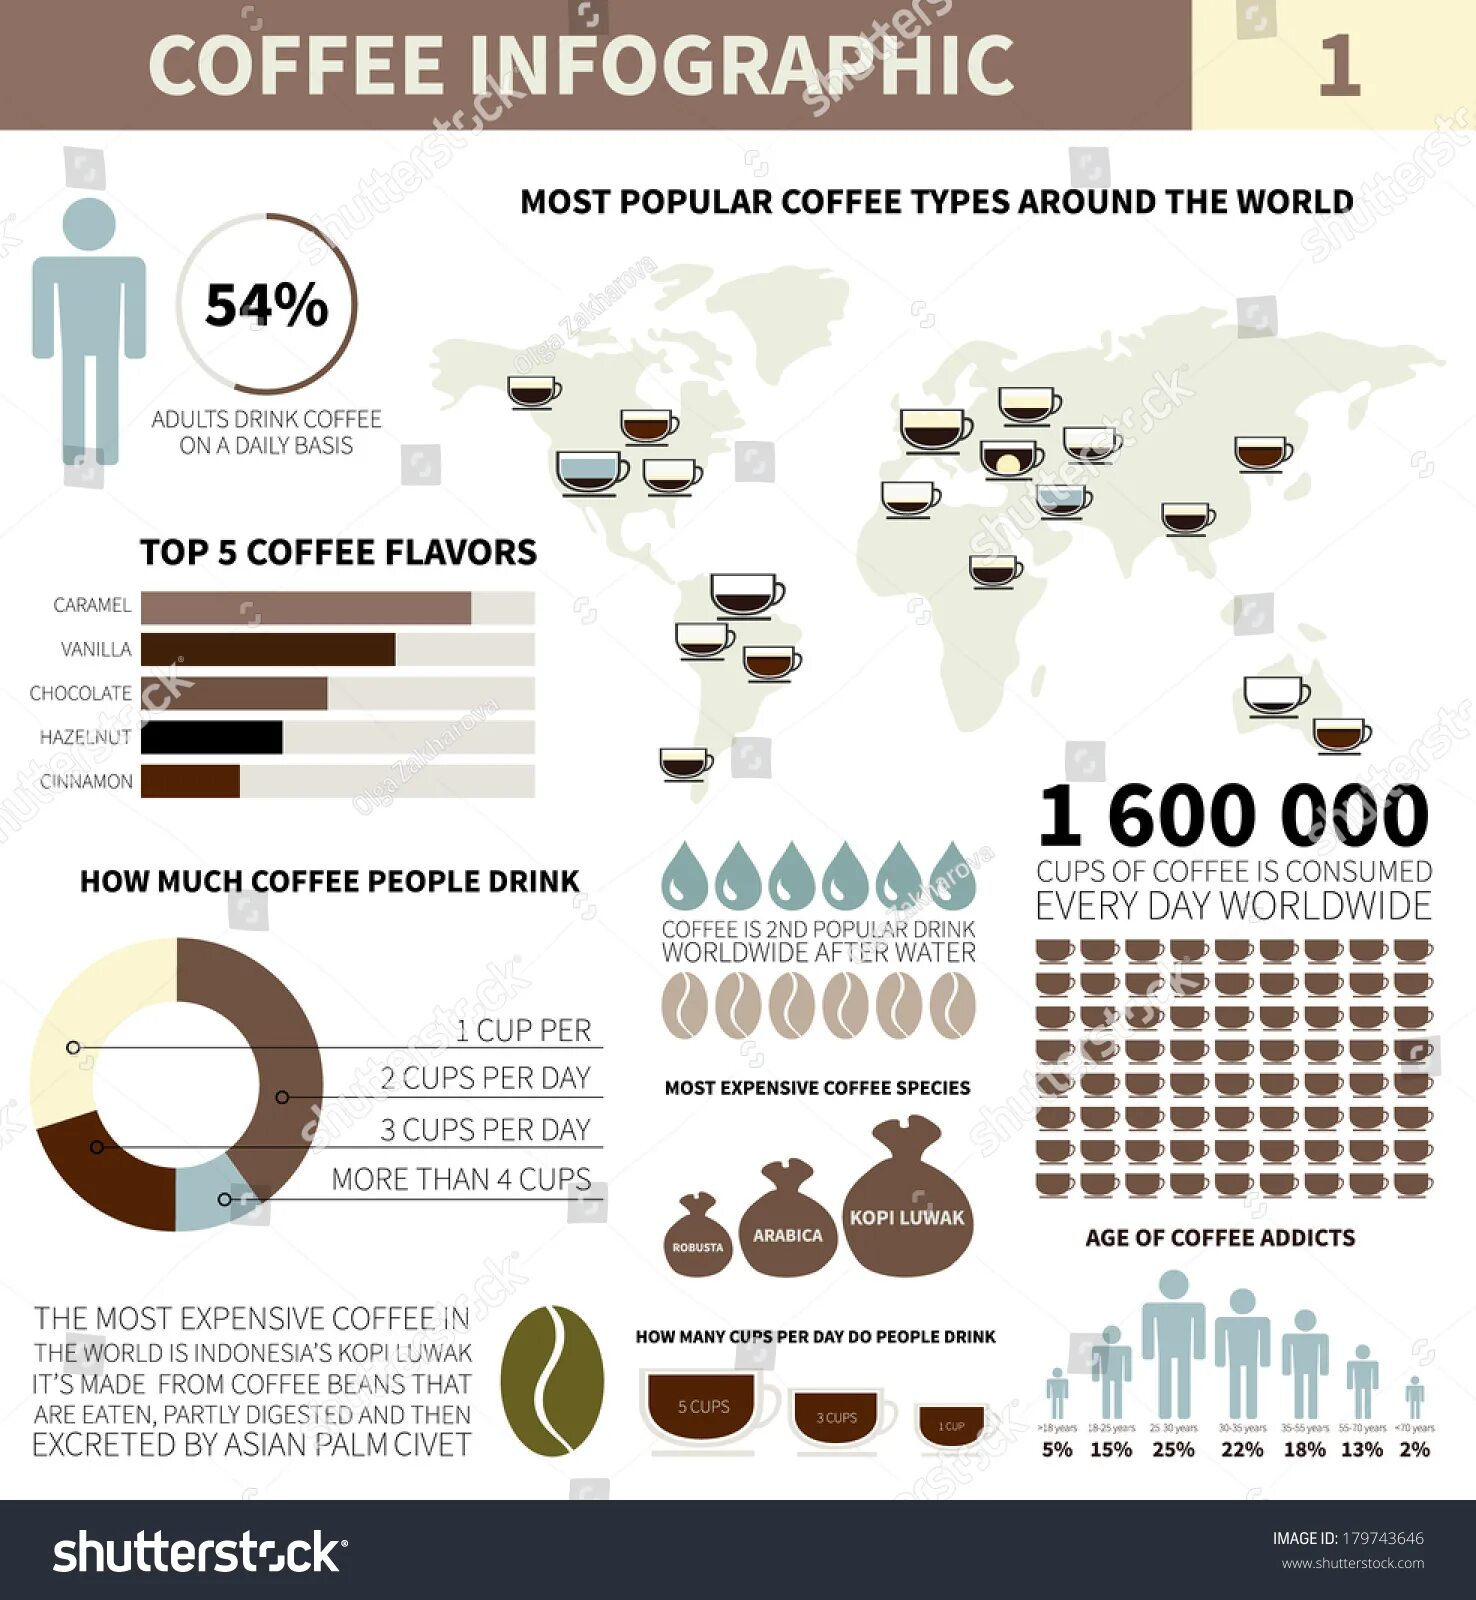 Инфографика кофе. Статистика кофе. Статистика потребления кофе. Инфографика потребления кофе.